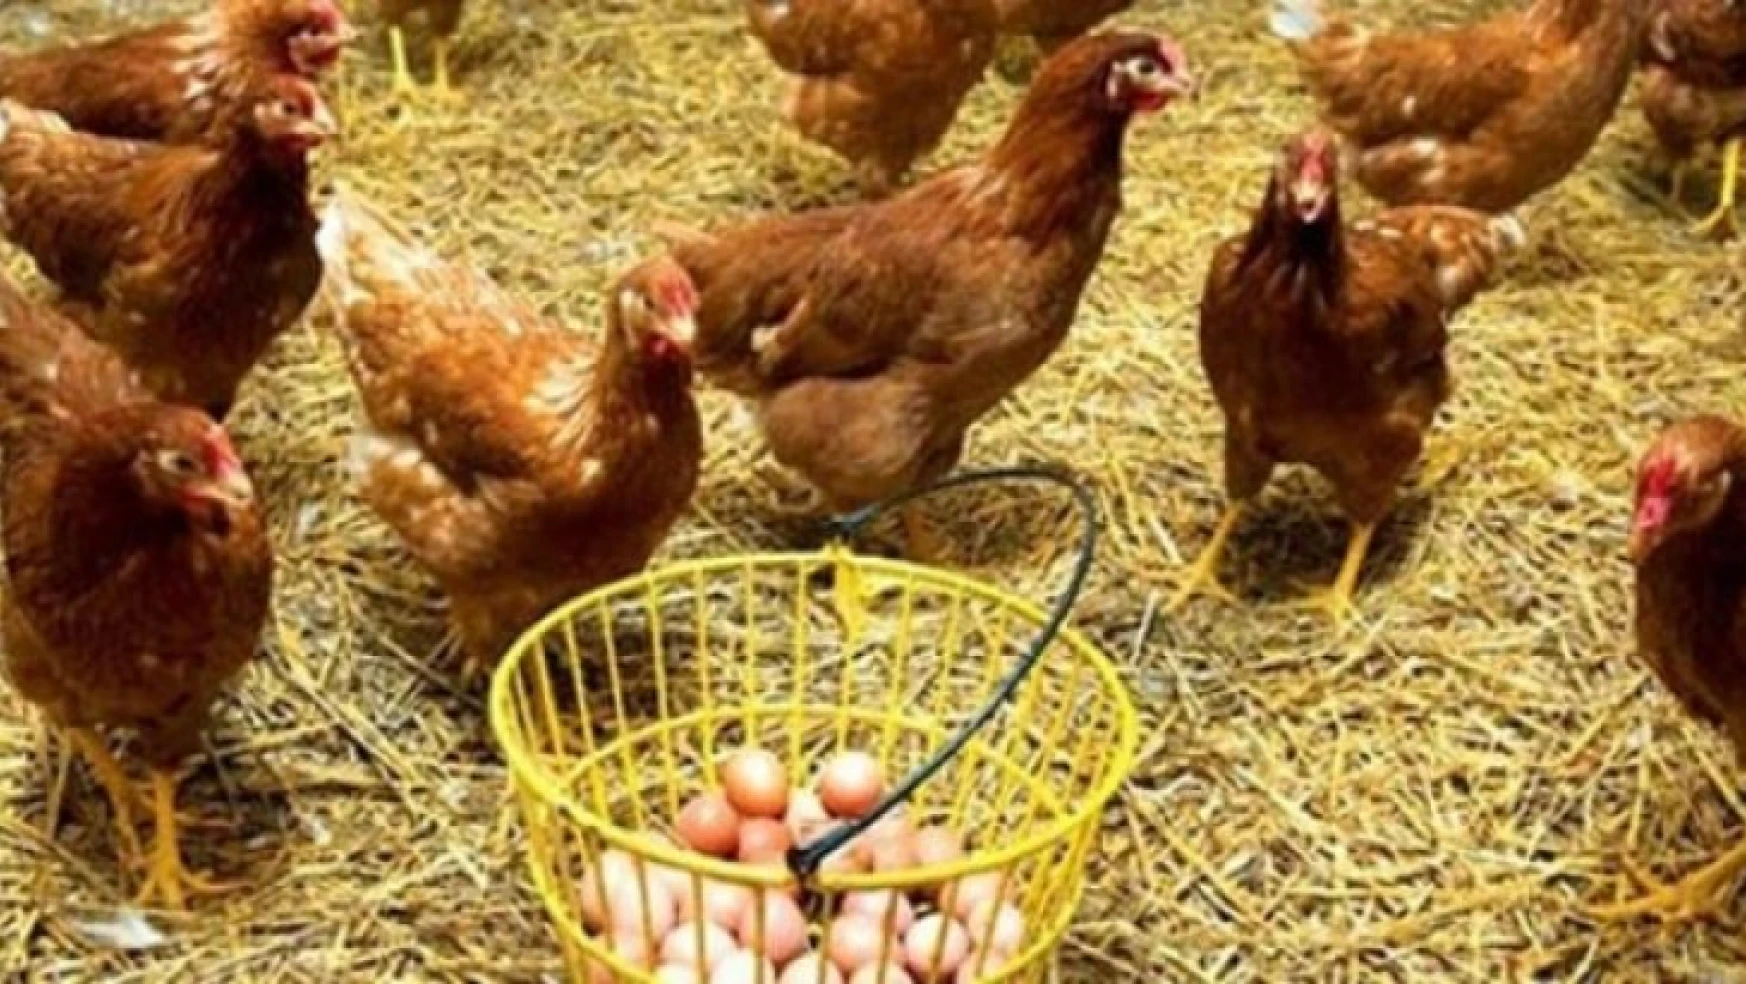 Tavuk eti üretimi 199 bin 900 ton, tavuk yumurtası üretimi 1,59 milyar adet olarak gerçekleşti